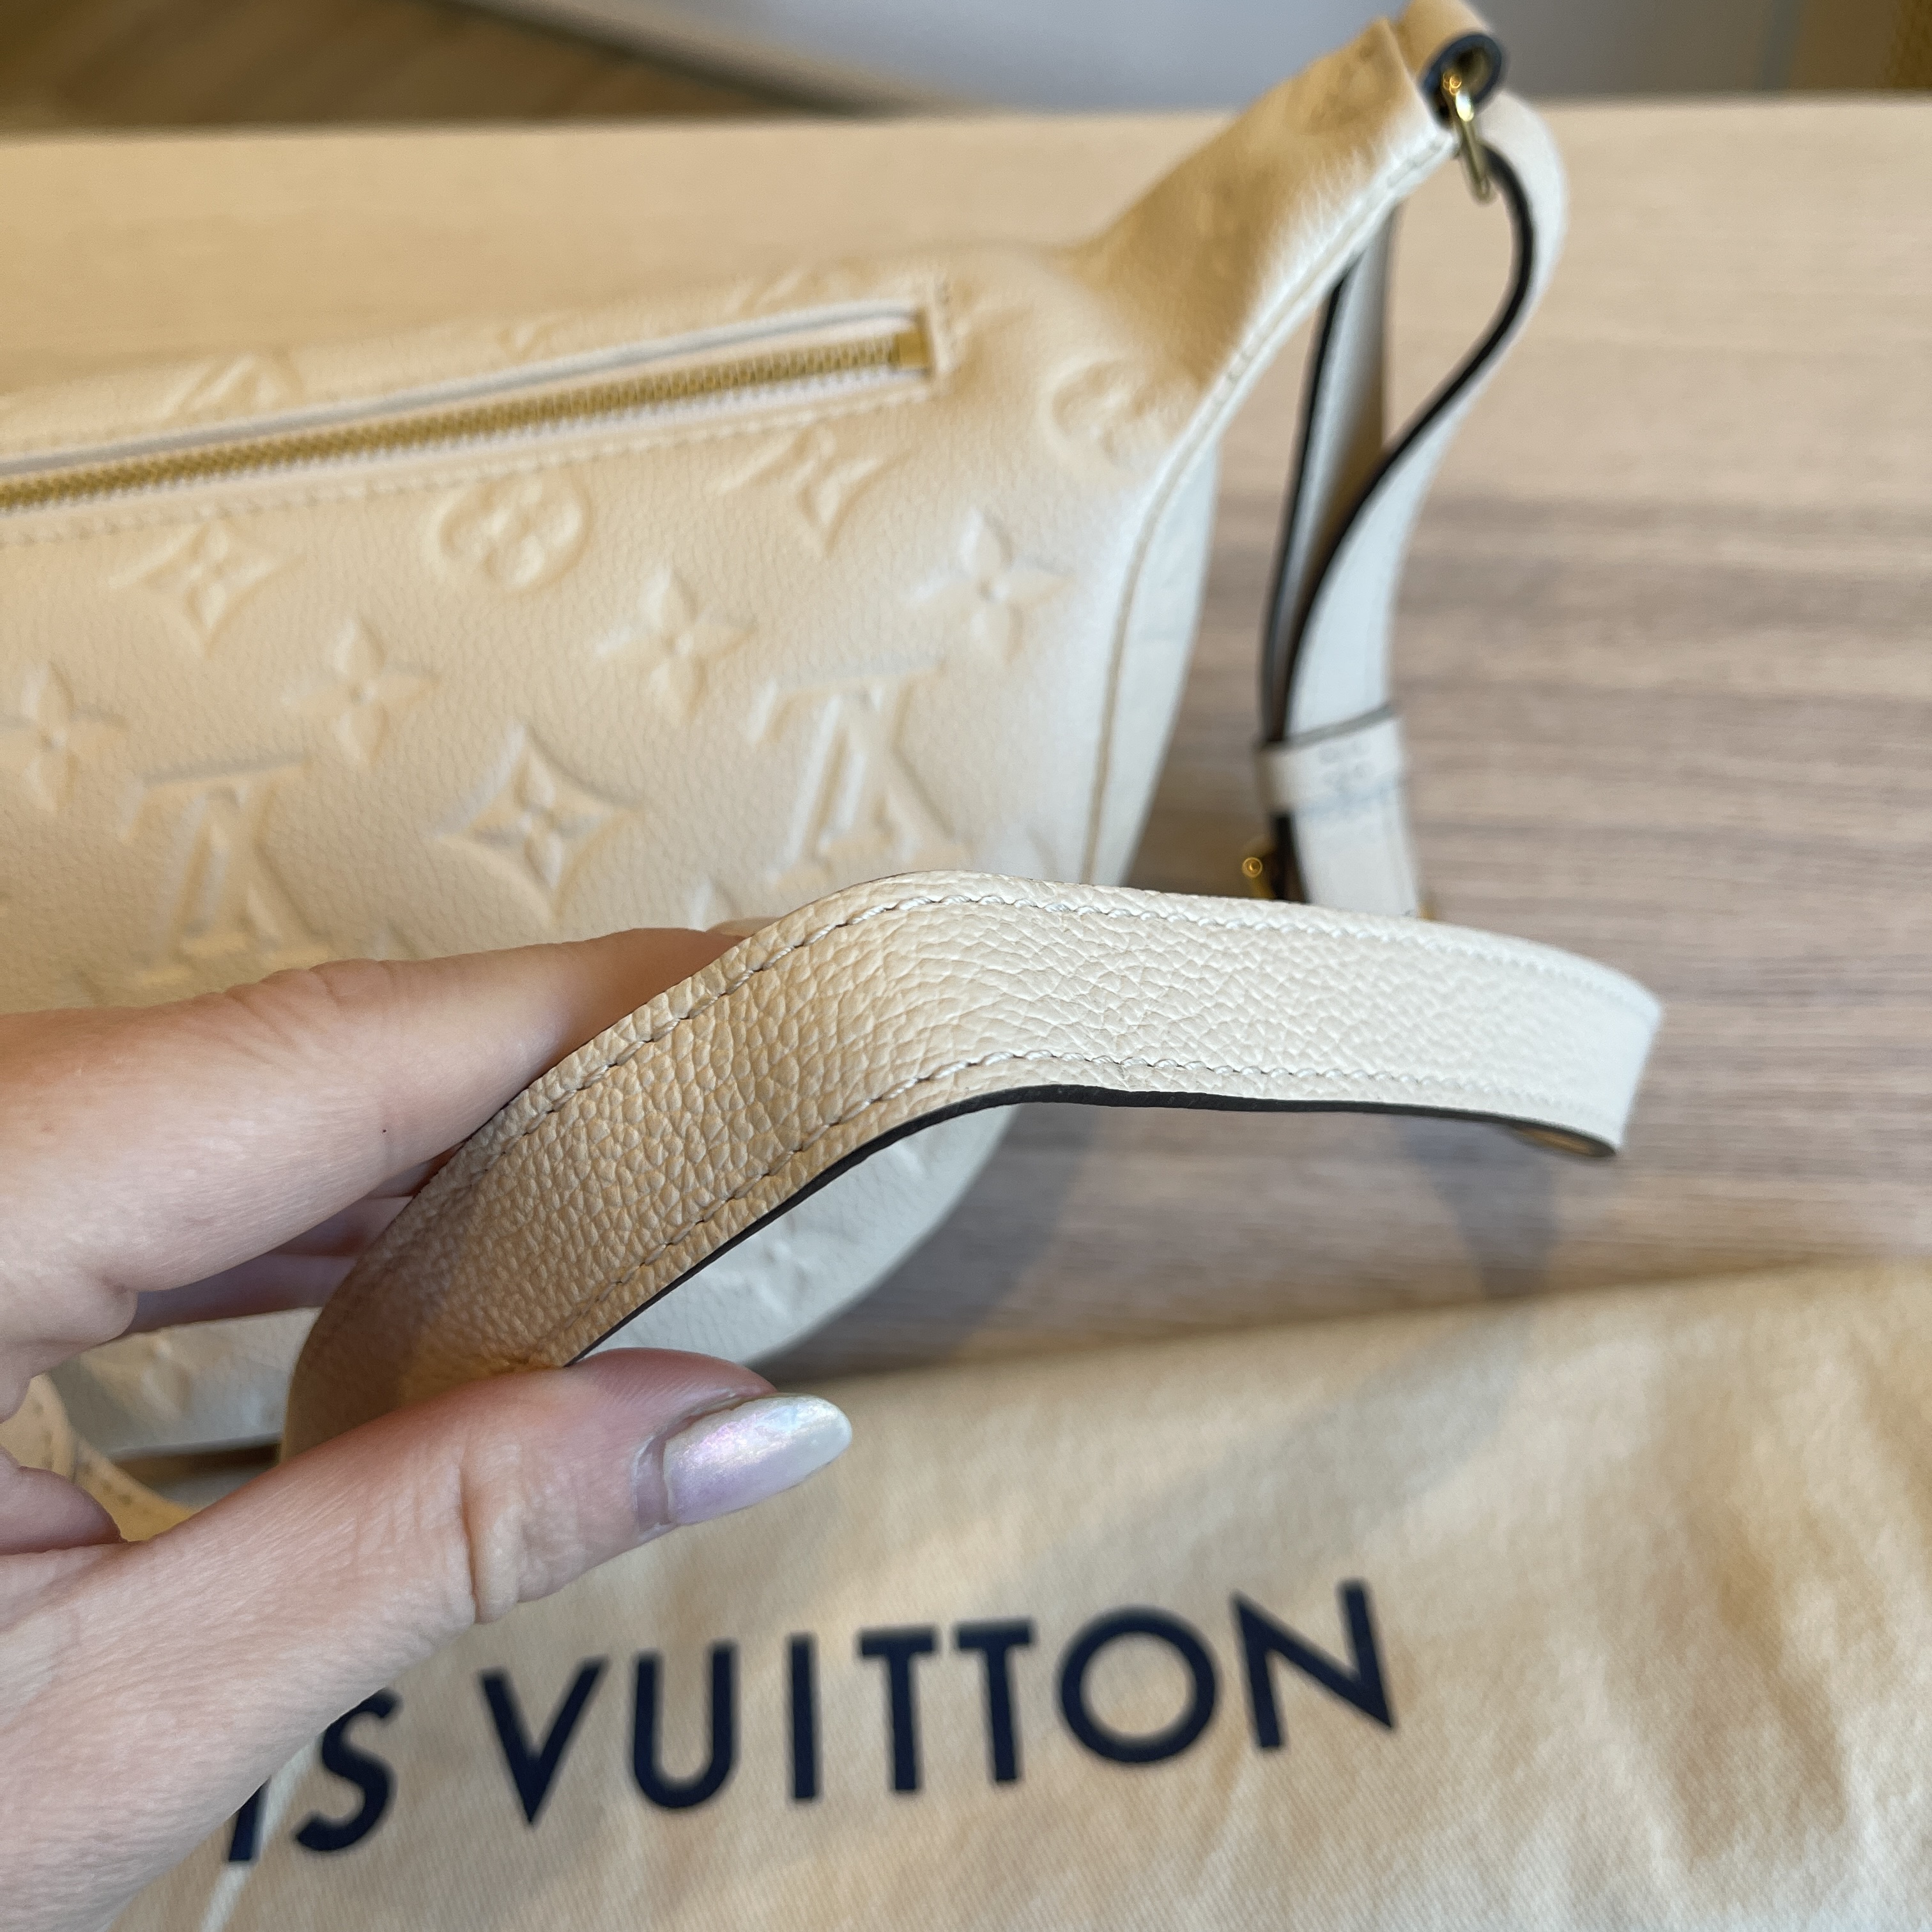 Louis Vuitton Empriente Bumbag White – DAC